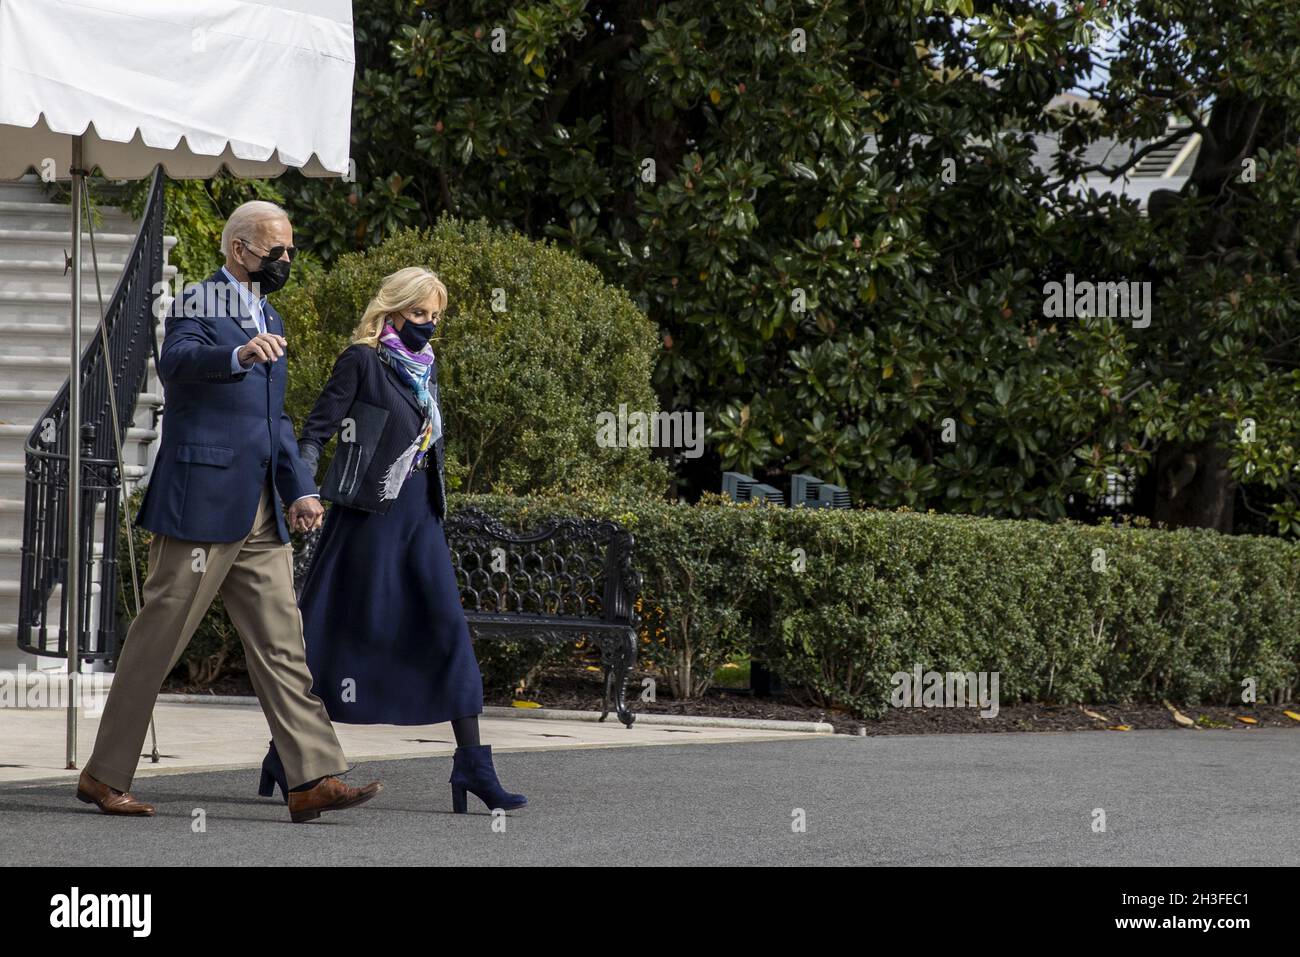 Washington, Estados Unidos. 28th Oct, 2021. El Presidente Joe Biden y la Primera Dama Jill Biden caminan en el césped sur de la Casa Blanca, en Washington, DC el jueves, 28 de octubre de 2021. El presidente Joe Biden y la primera dama Jill Biden se dirigen a Europa para asistir a la Cumbre del G-20 y para una reunión con el Papa Francisco y otros líderes mundiales. Foto de Tasos Katopodis/UPI Crédito: UPI/Alamy Live News Foto de stock